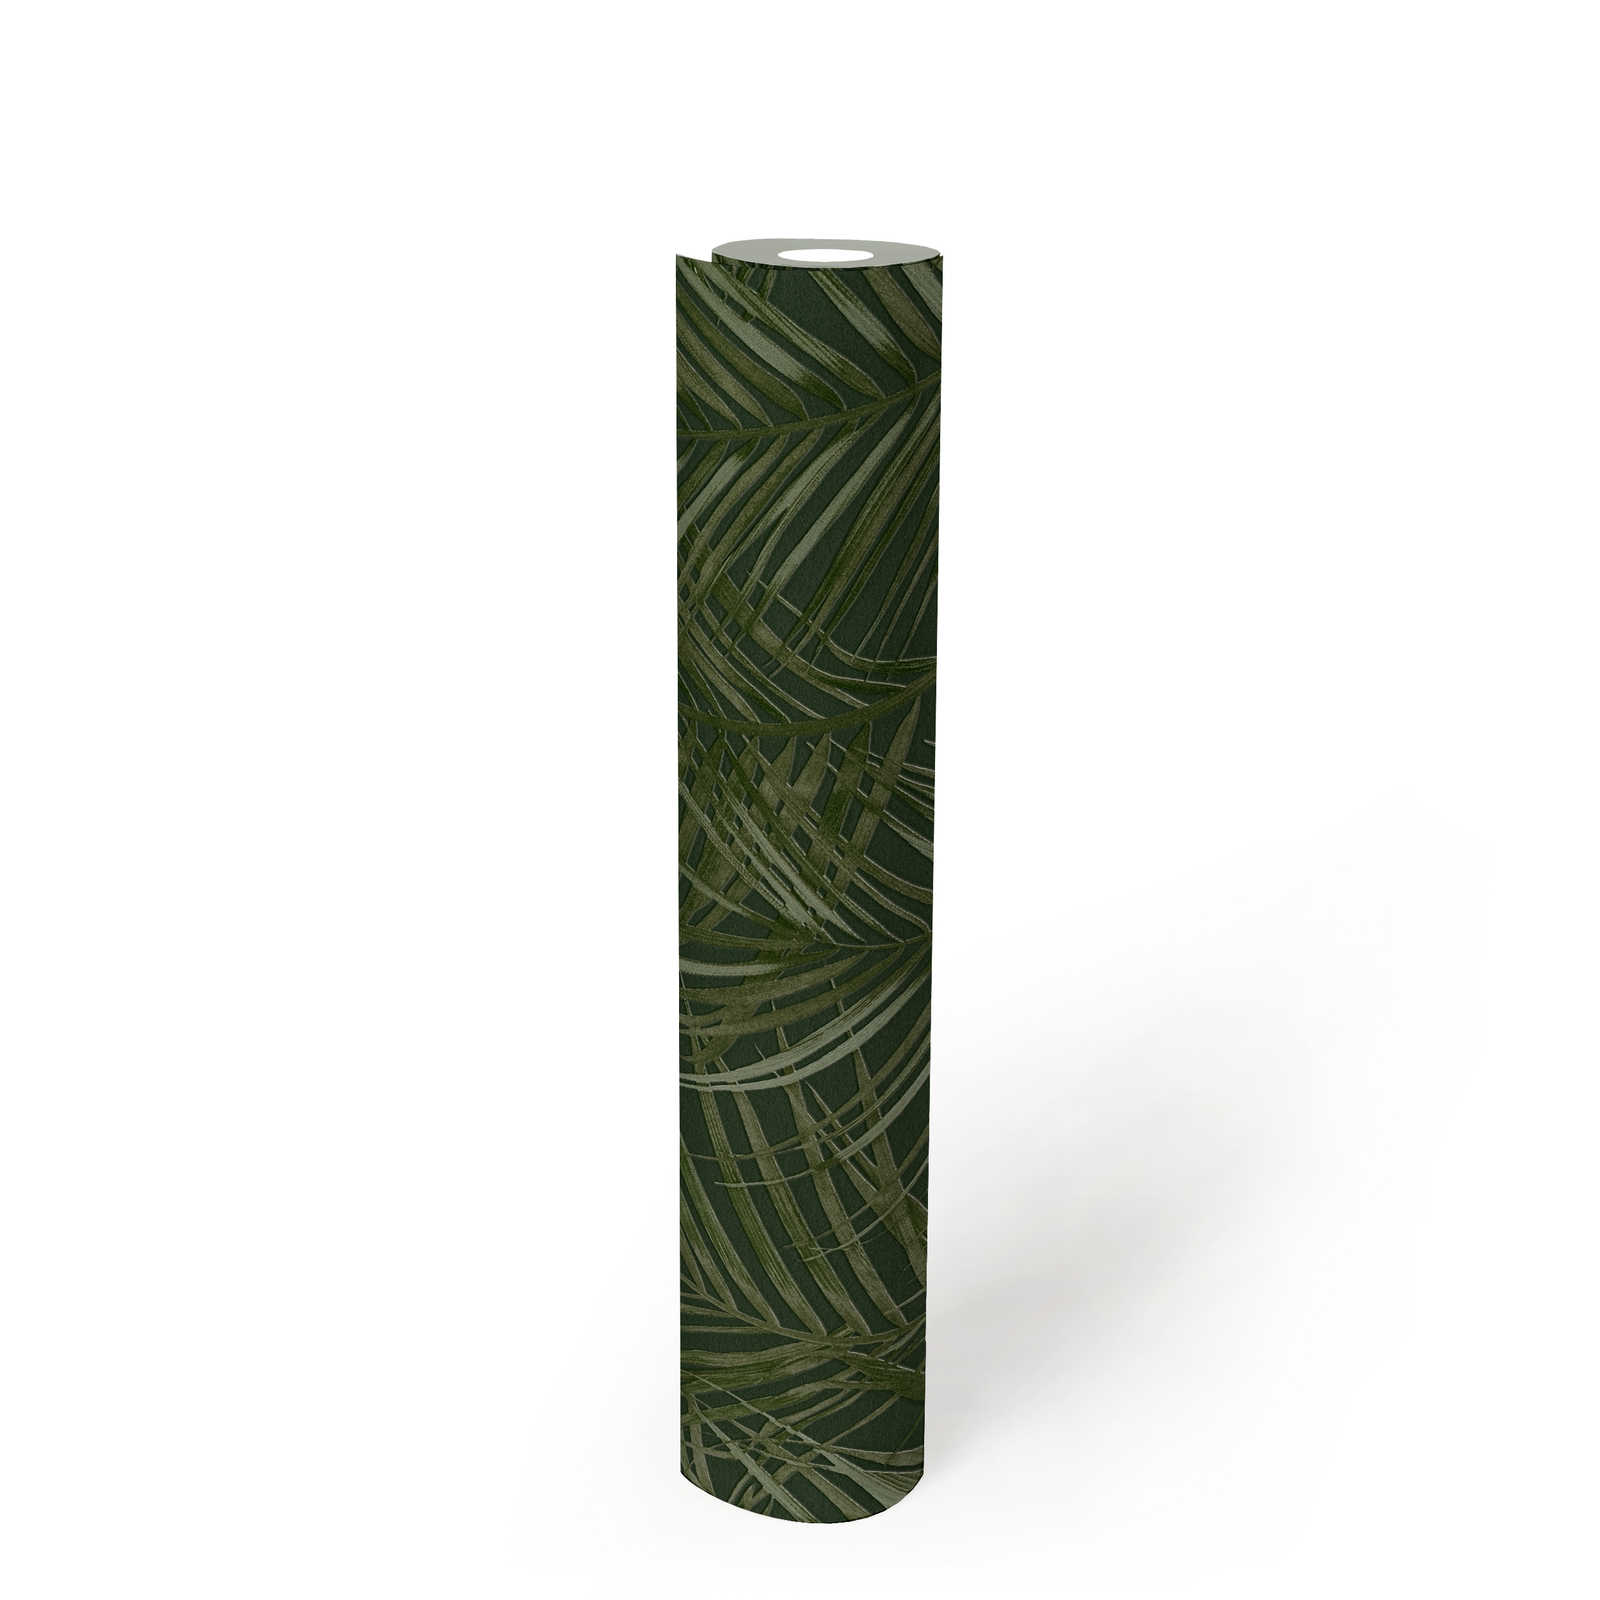             Vliestapete mit floralem Palmen Muster matt – Grün
        